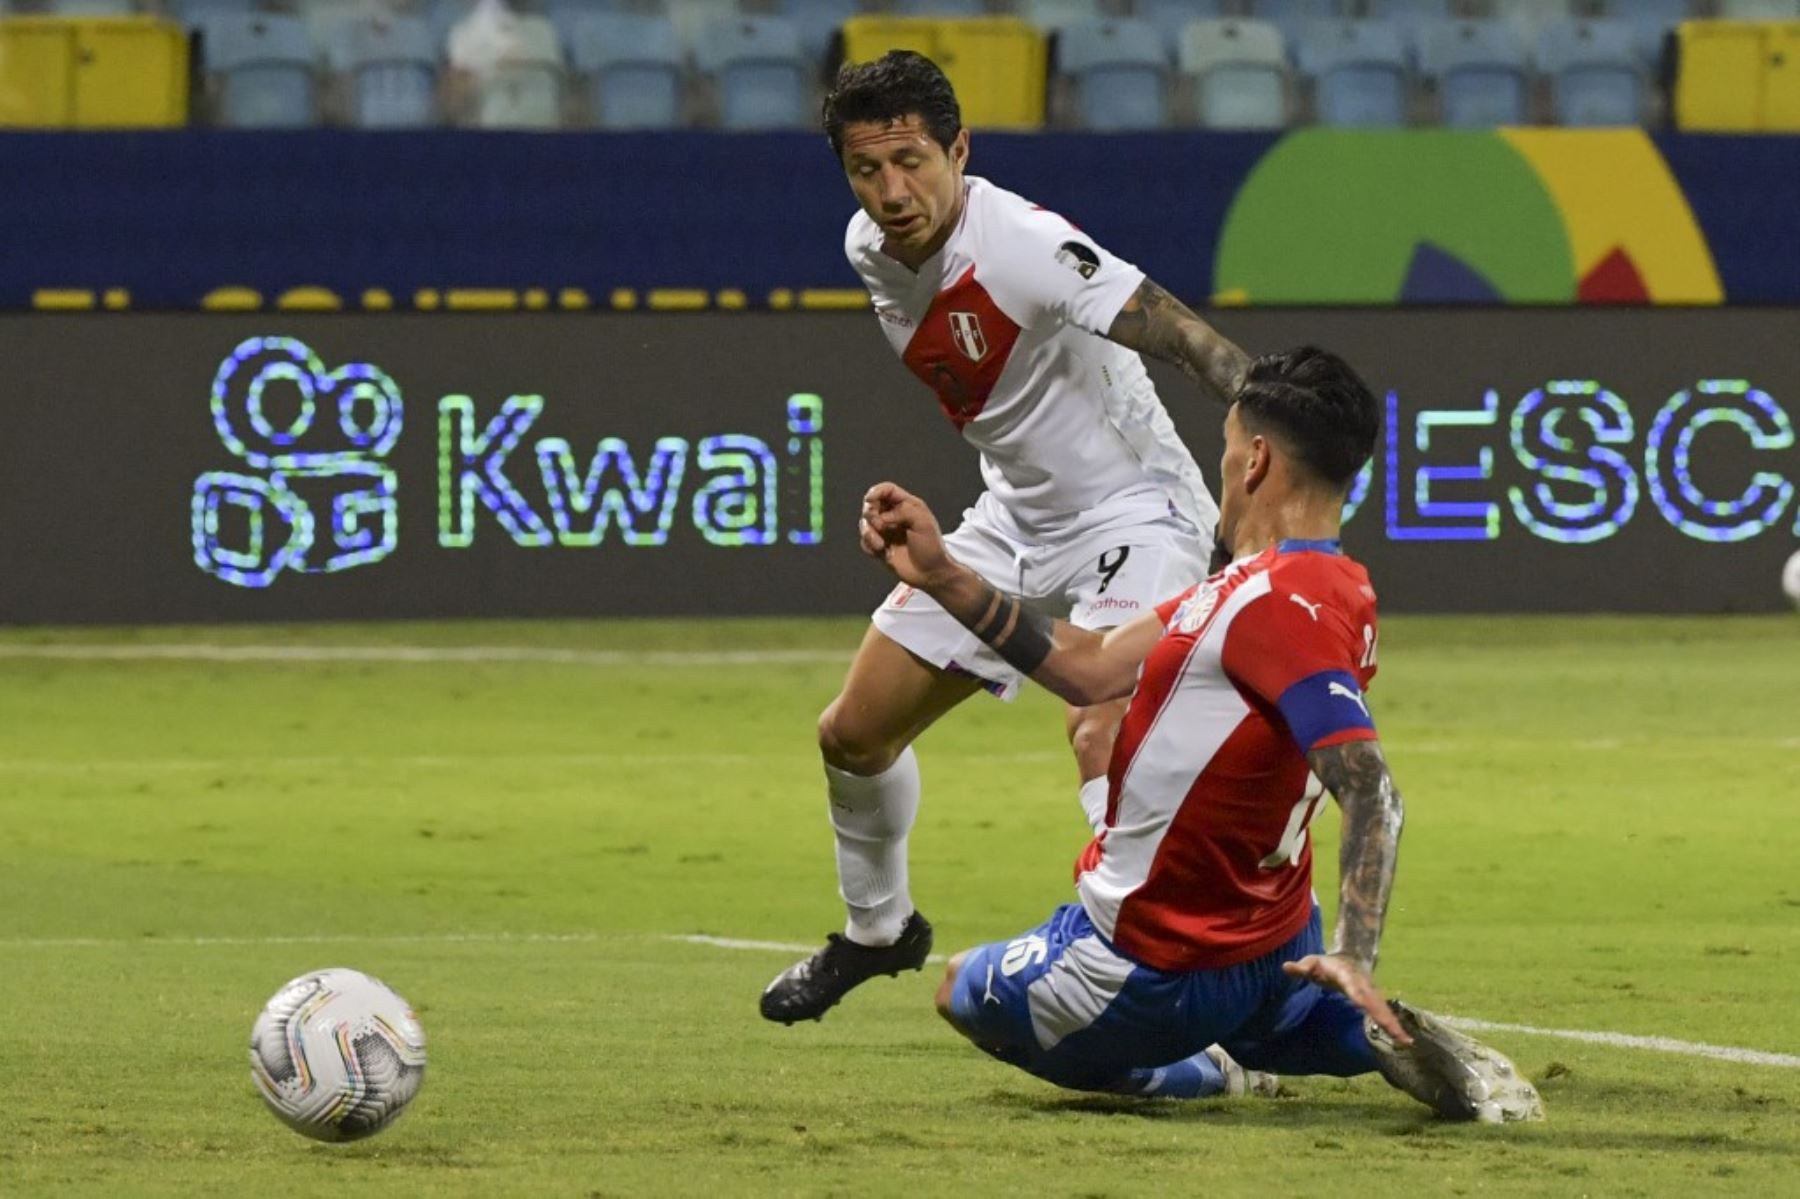 El Perú-Paraguay será el partido más atractivo de la última jornada de las eliminatorias al Mundial Catar 2022